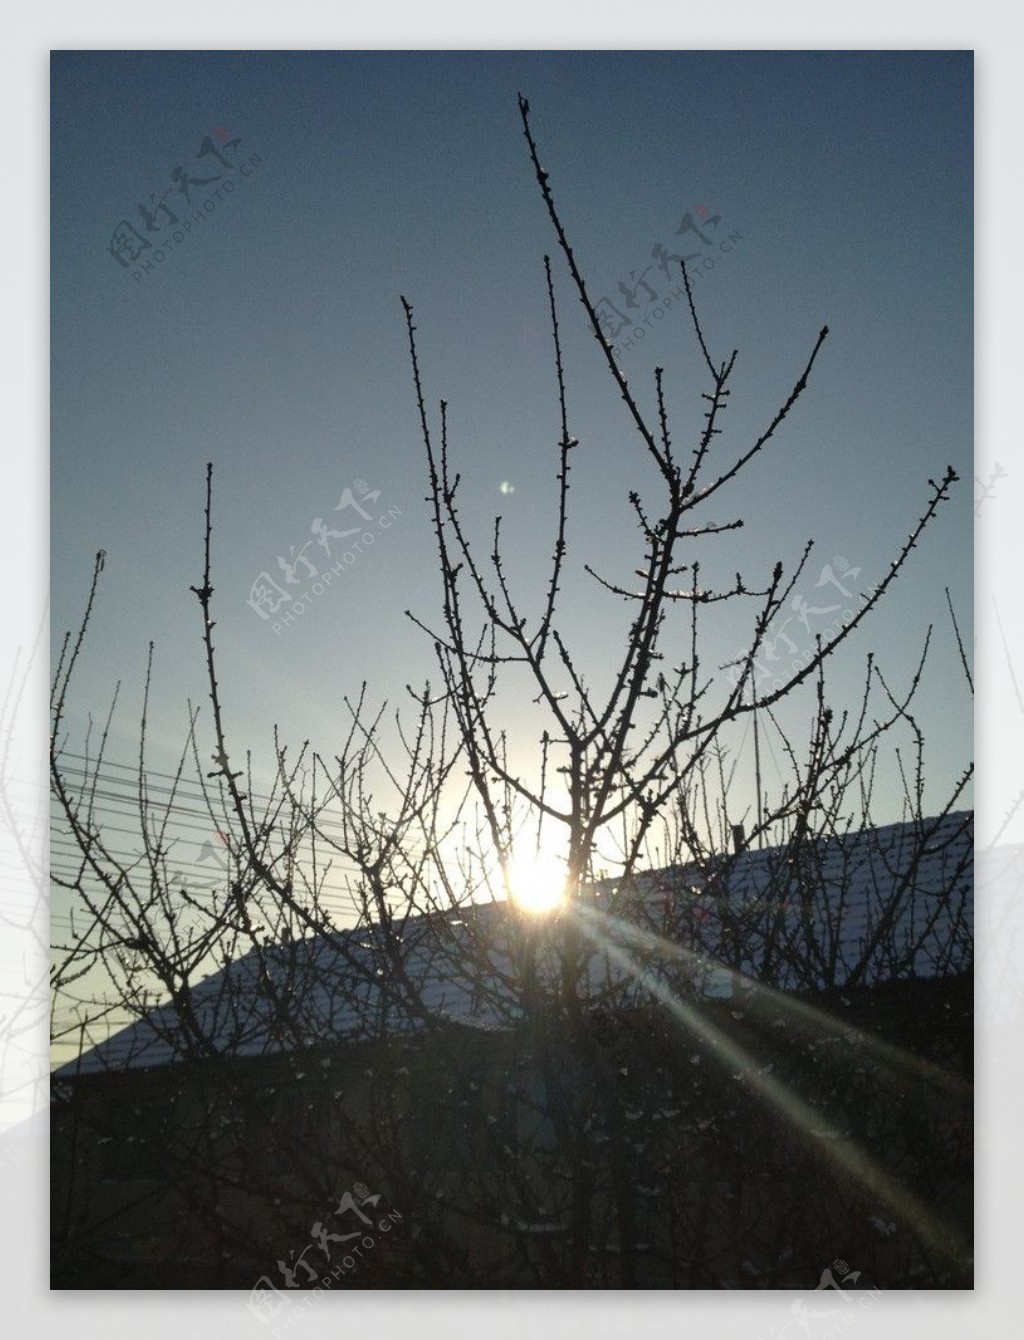 冬日暖阳图片